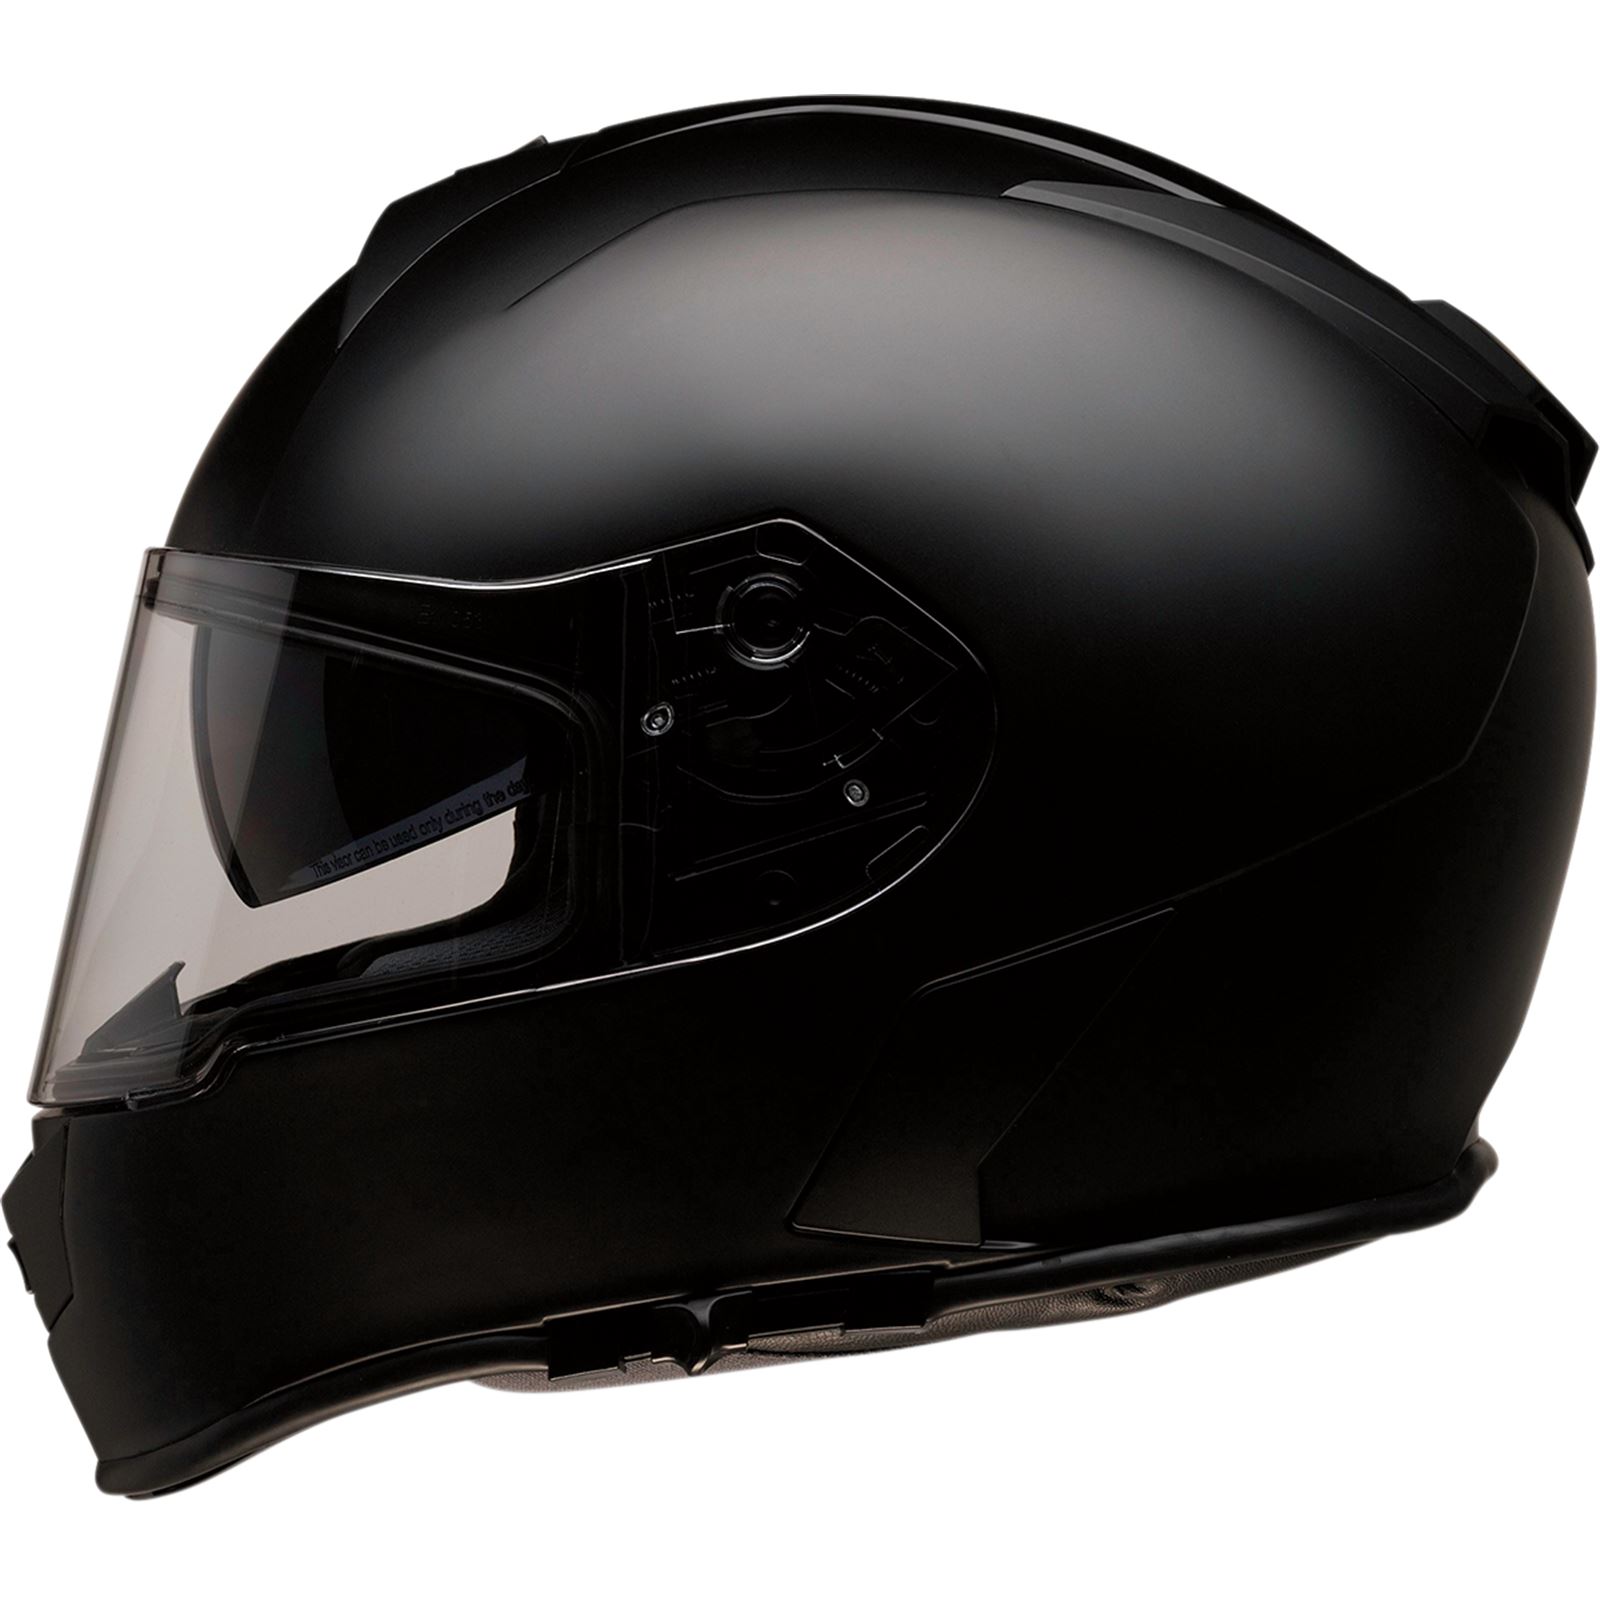 Z1R Warrant Helmet - Flat Black - XS